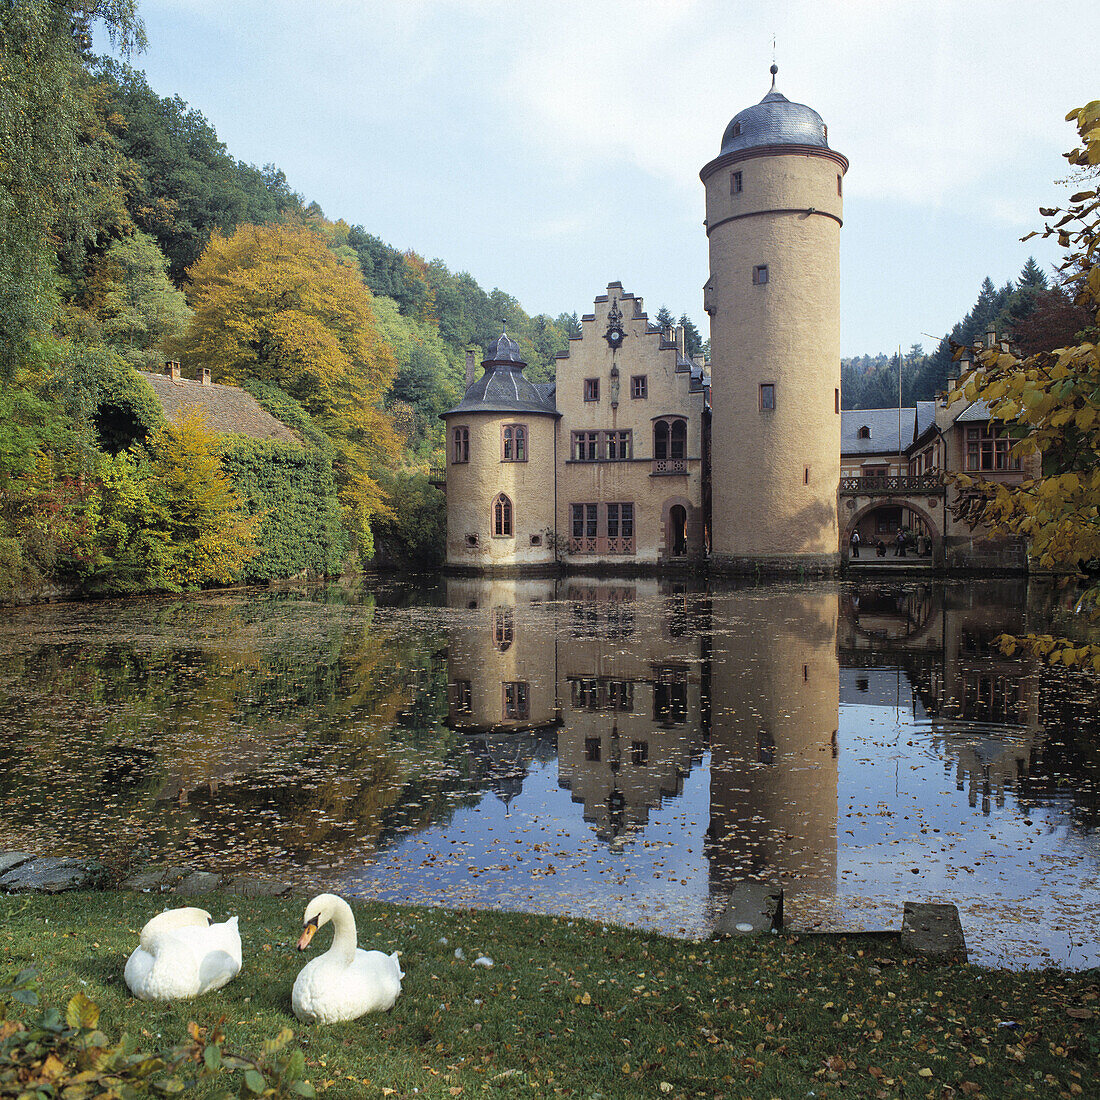 Castle, Mespelbrunn, Bavaria, Germany